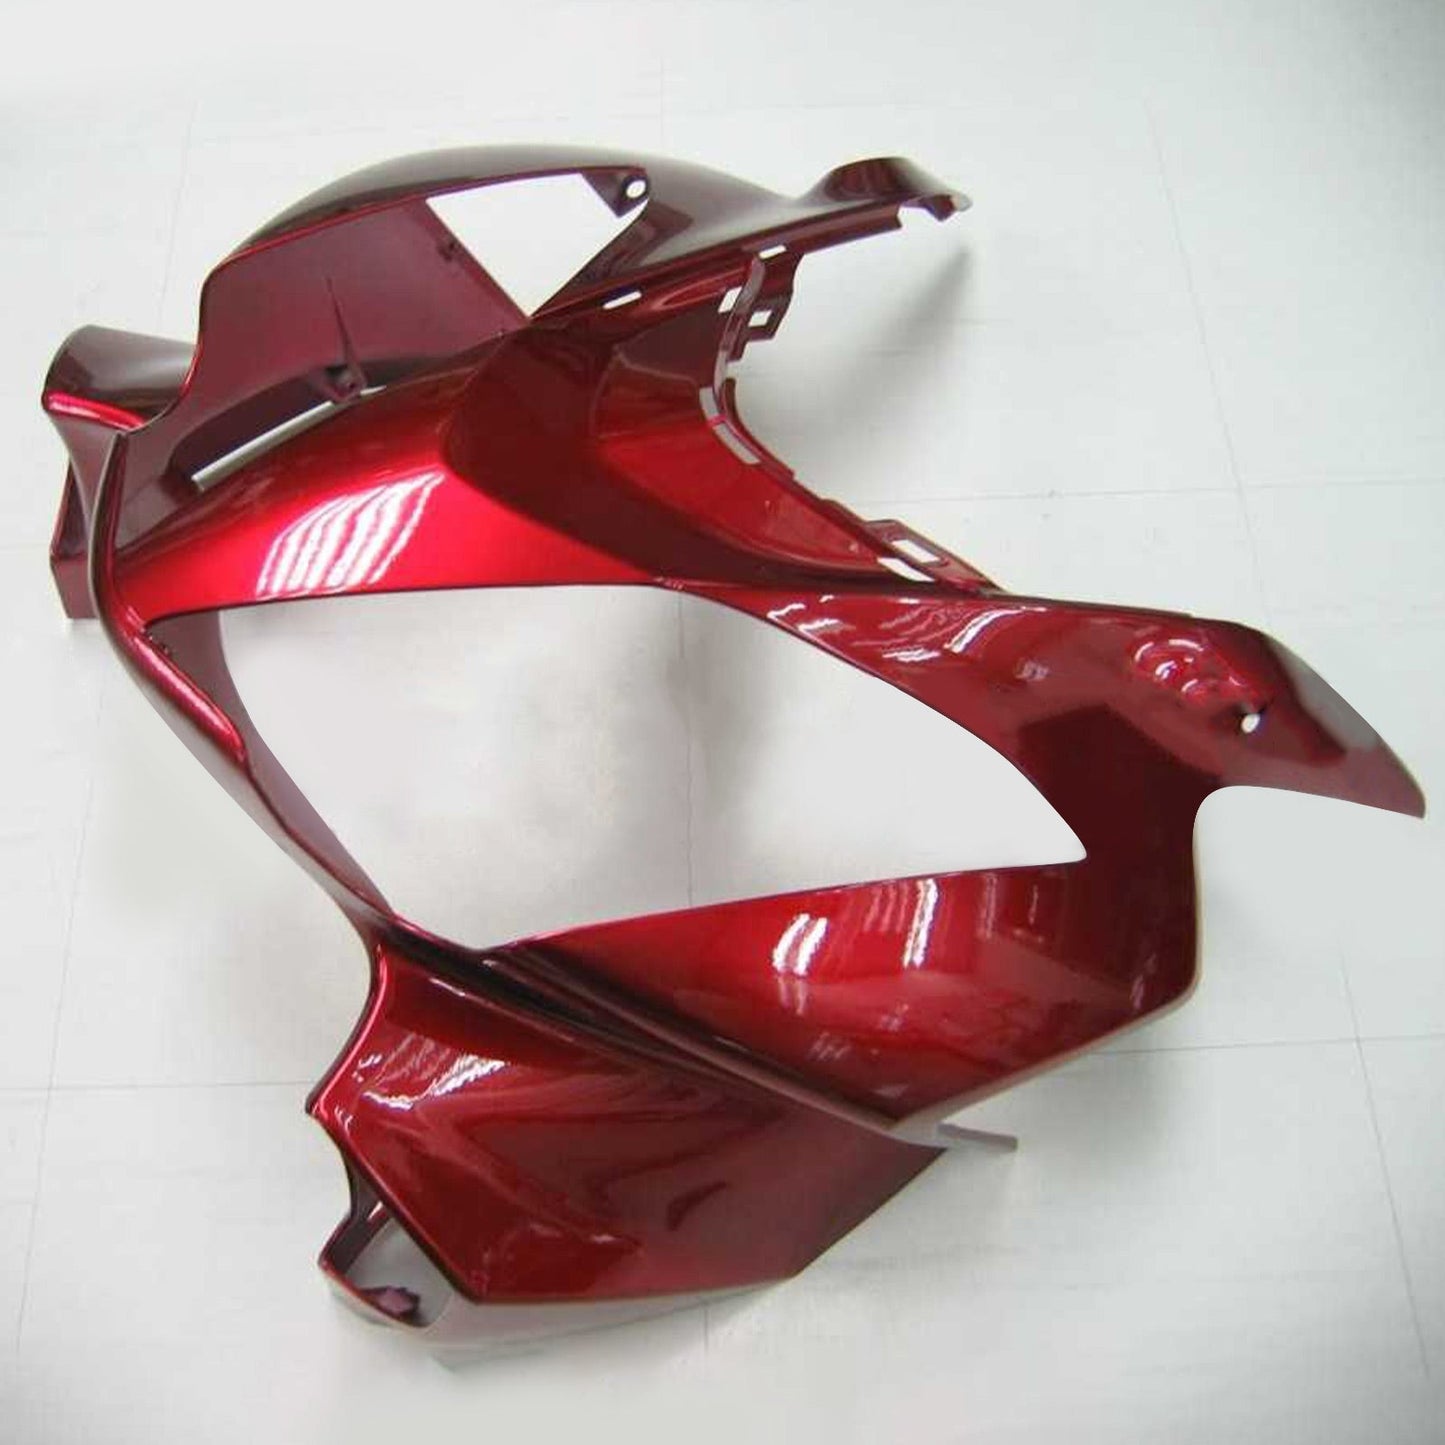 Amotopart 2002-2012 Honda VFR800 Gloss Redfairing Kit